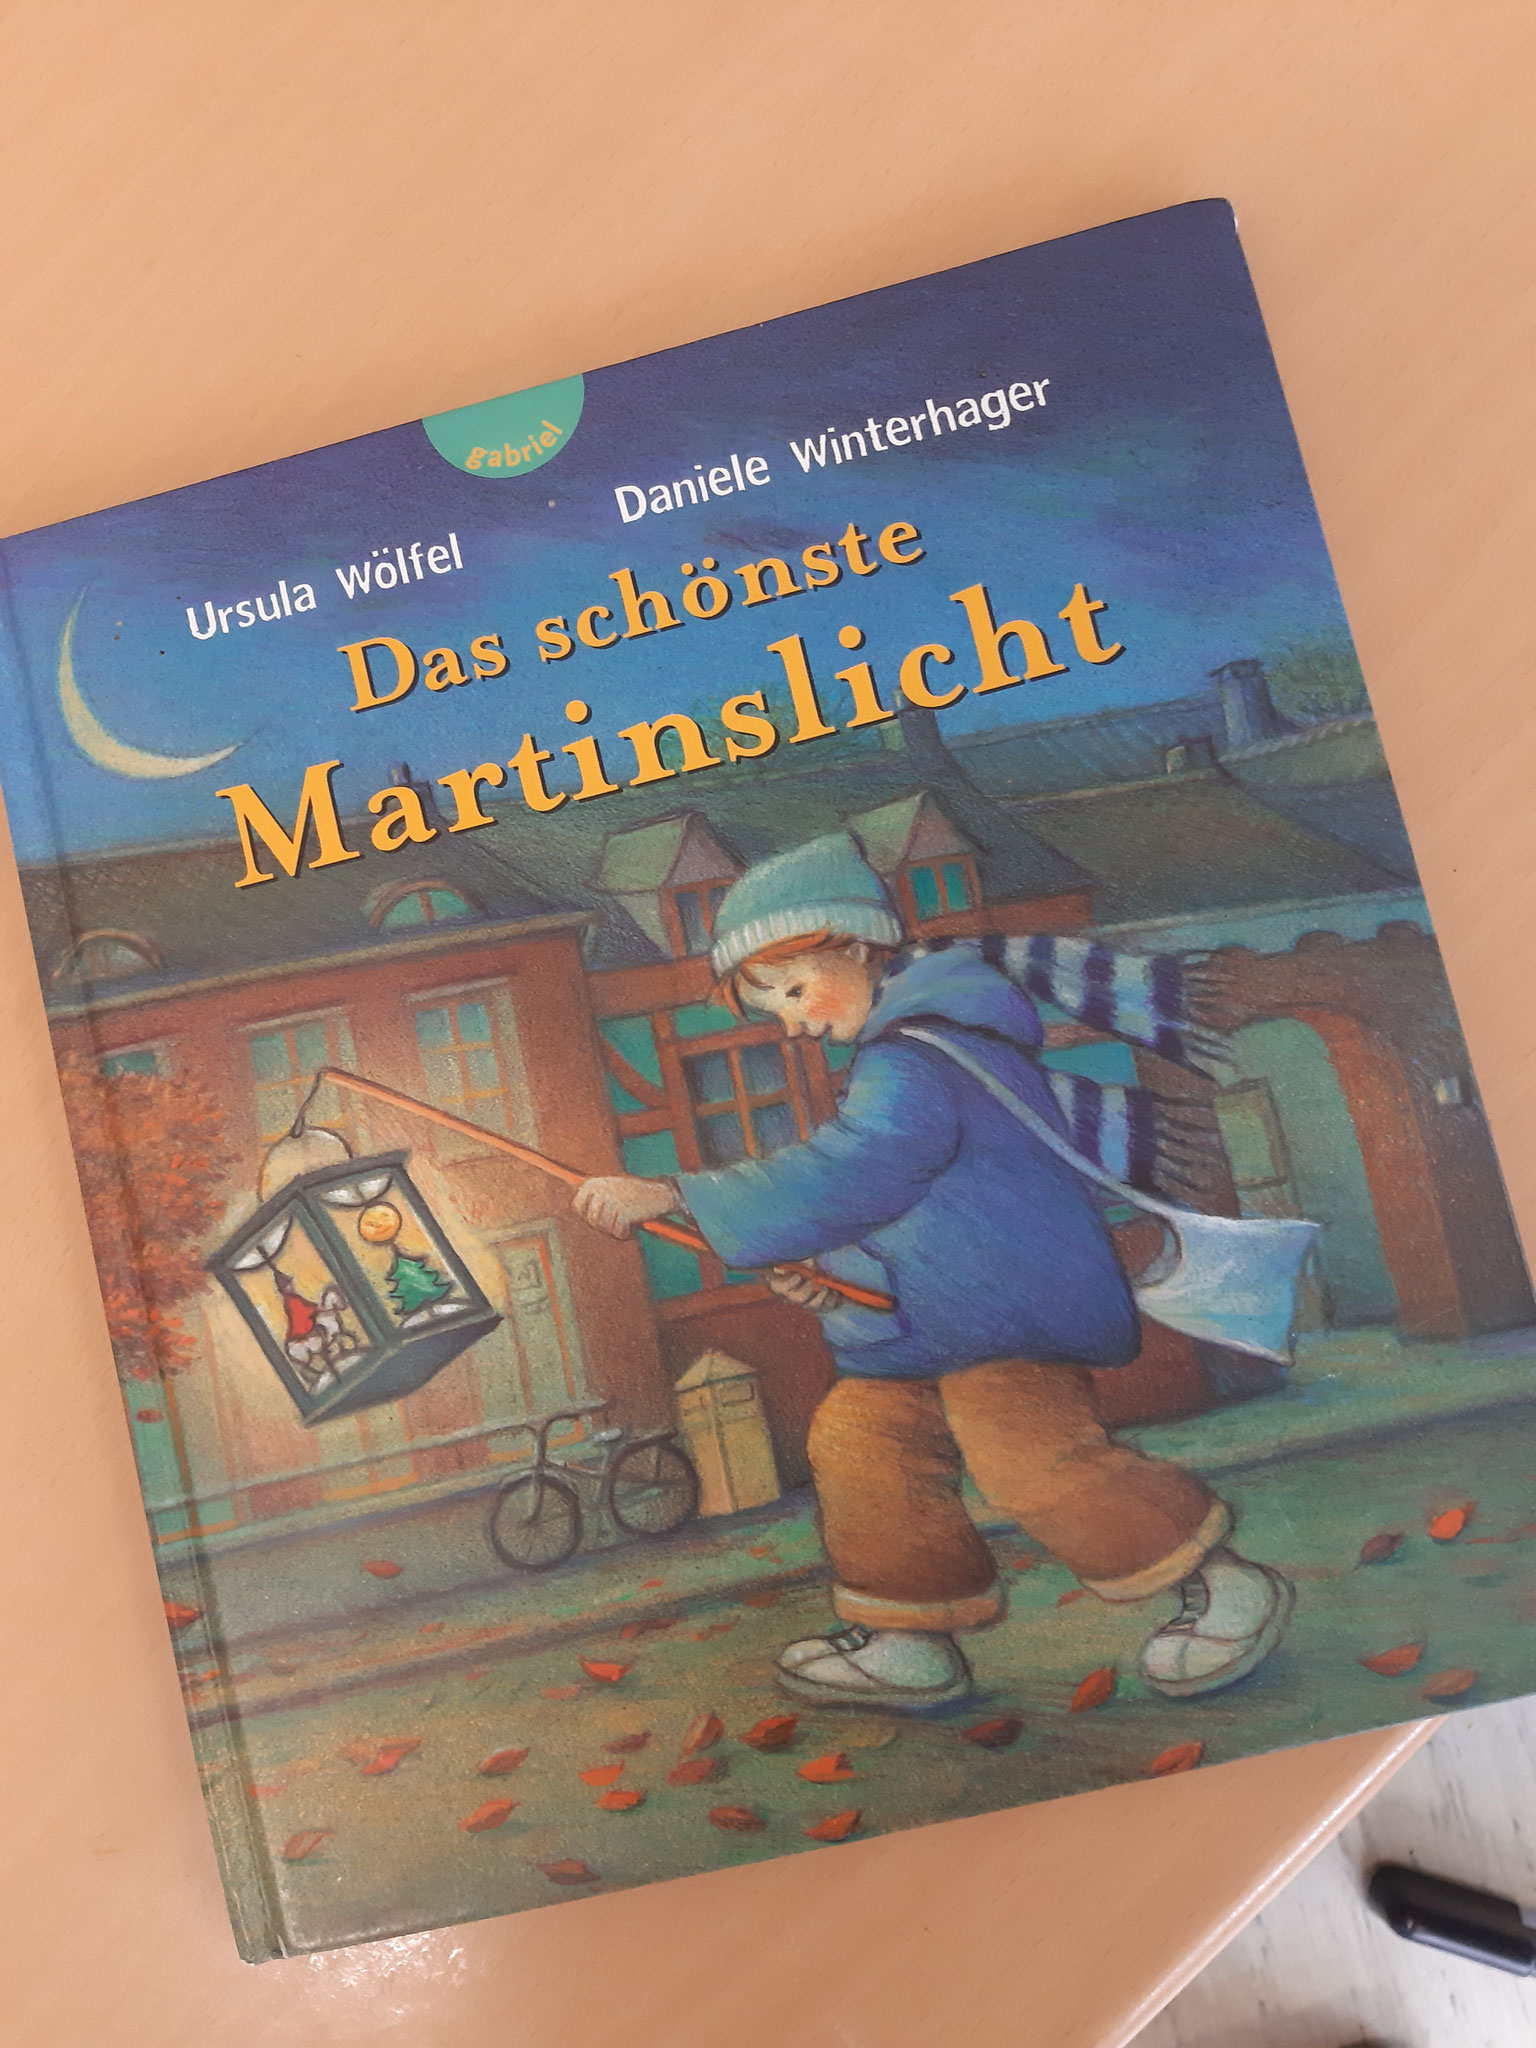 Wir haben das Bilderbuch " Das schönste Martinslicht" von Ursula Wölfel vorgelesen bekommen.